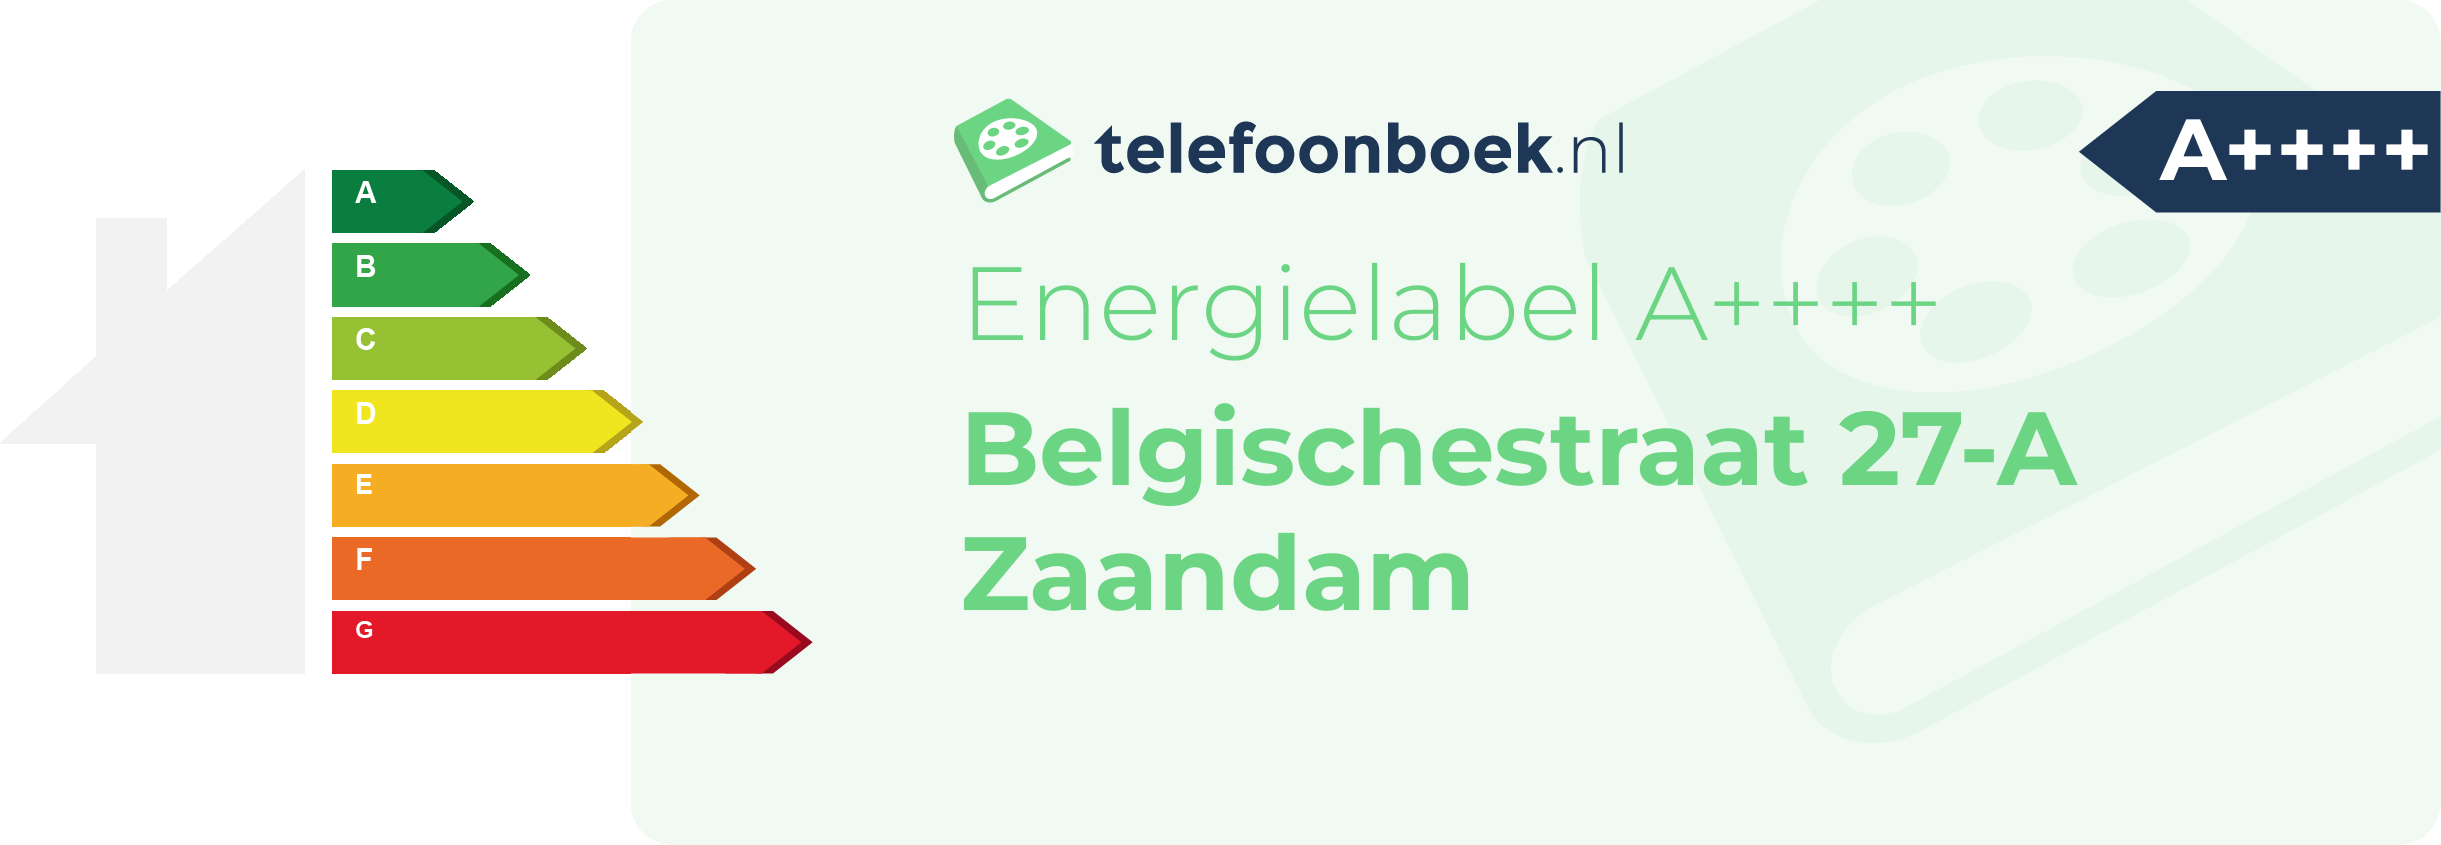 Energielabel Belgischestraat 27-A Zaandam